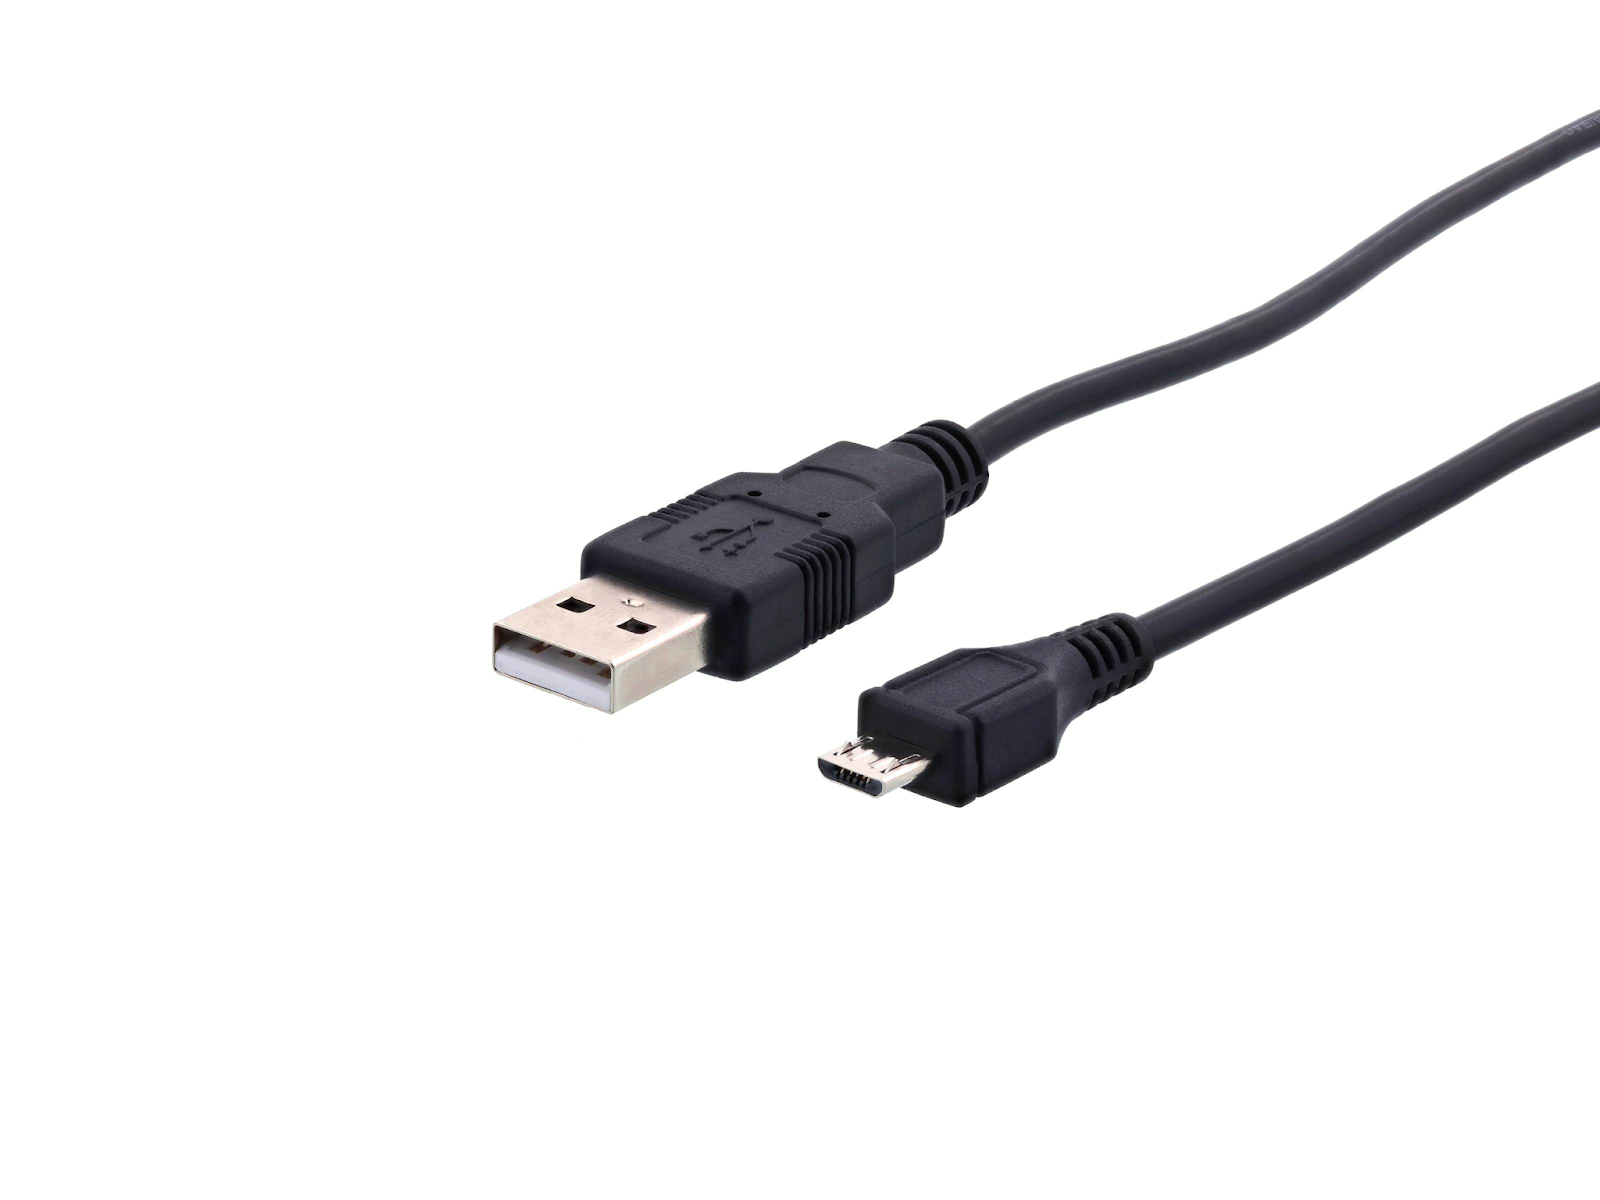 USB 2.0 được coi là cuộc một cách mạng về tốc độ truyền dữ liệu